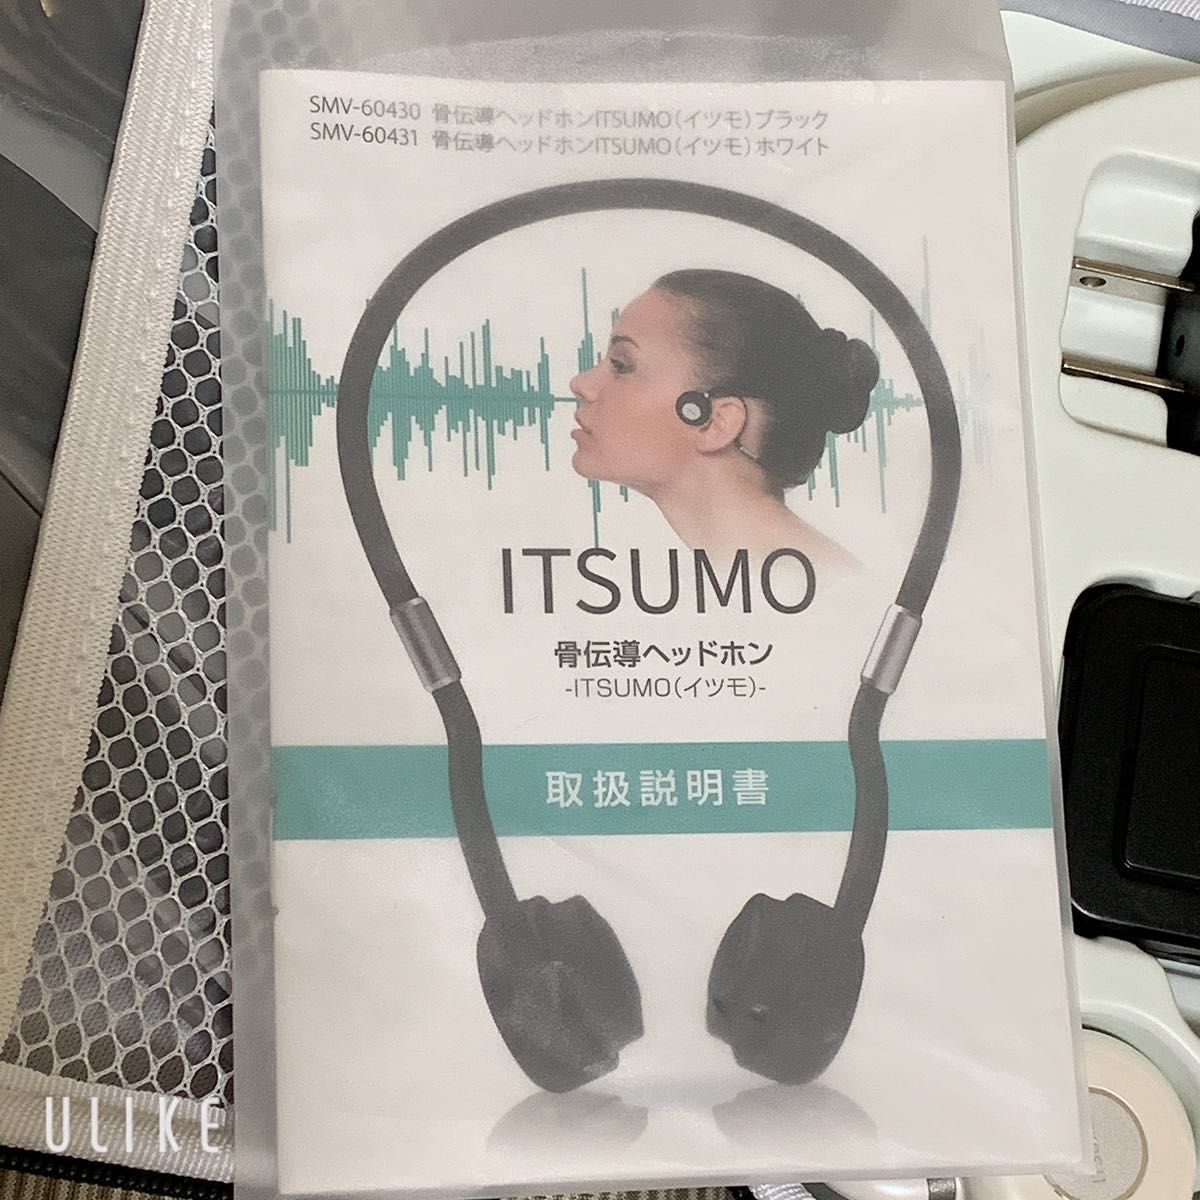 ITSUMO イツモ 骨伝導ヘッドホン イヤフォン 取り扱い説明書付き 欠品なし 試着のみ 充電コードあり ハードケース付き 黒